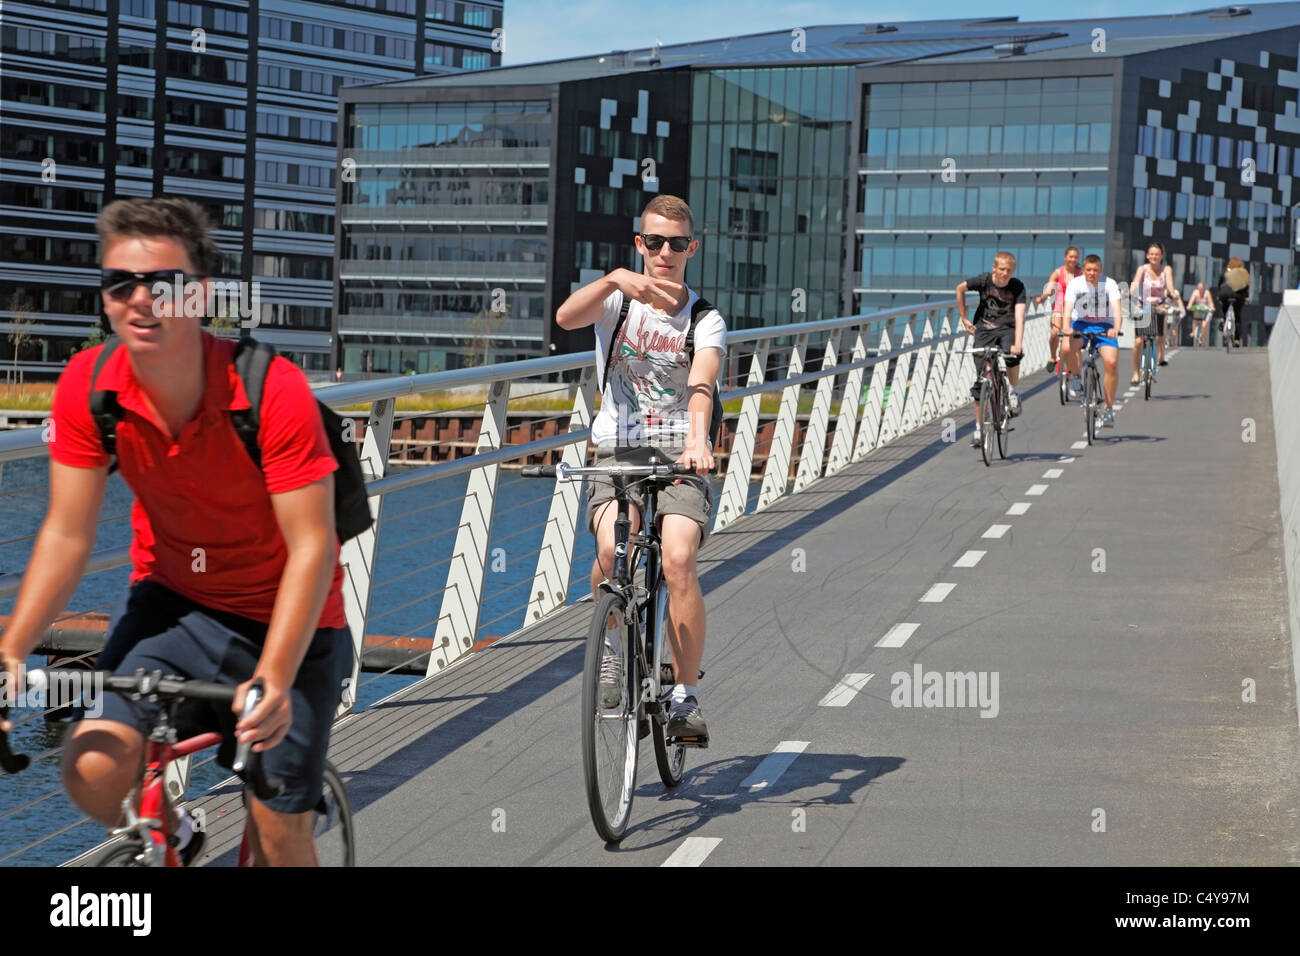 Heureux garçons ou jeunes sur des vélos qui passent le long de 190 m et 5,5 m de large vélo et pont piétonnier en acier au-dessus du port de Copenhague, Danemark. Banque D'Images